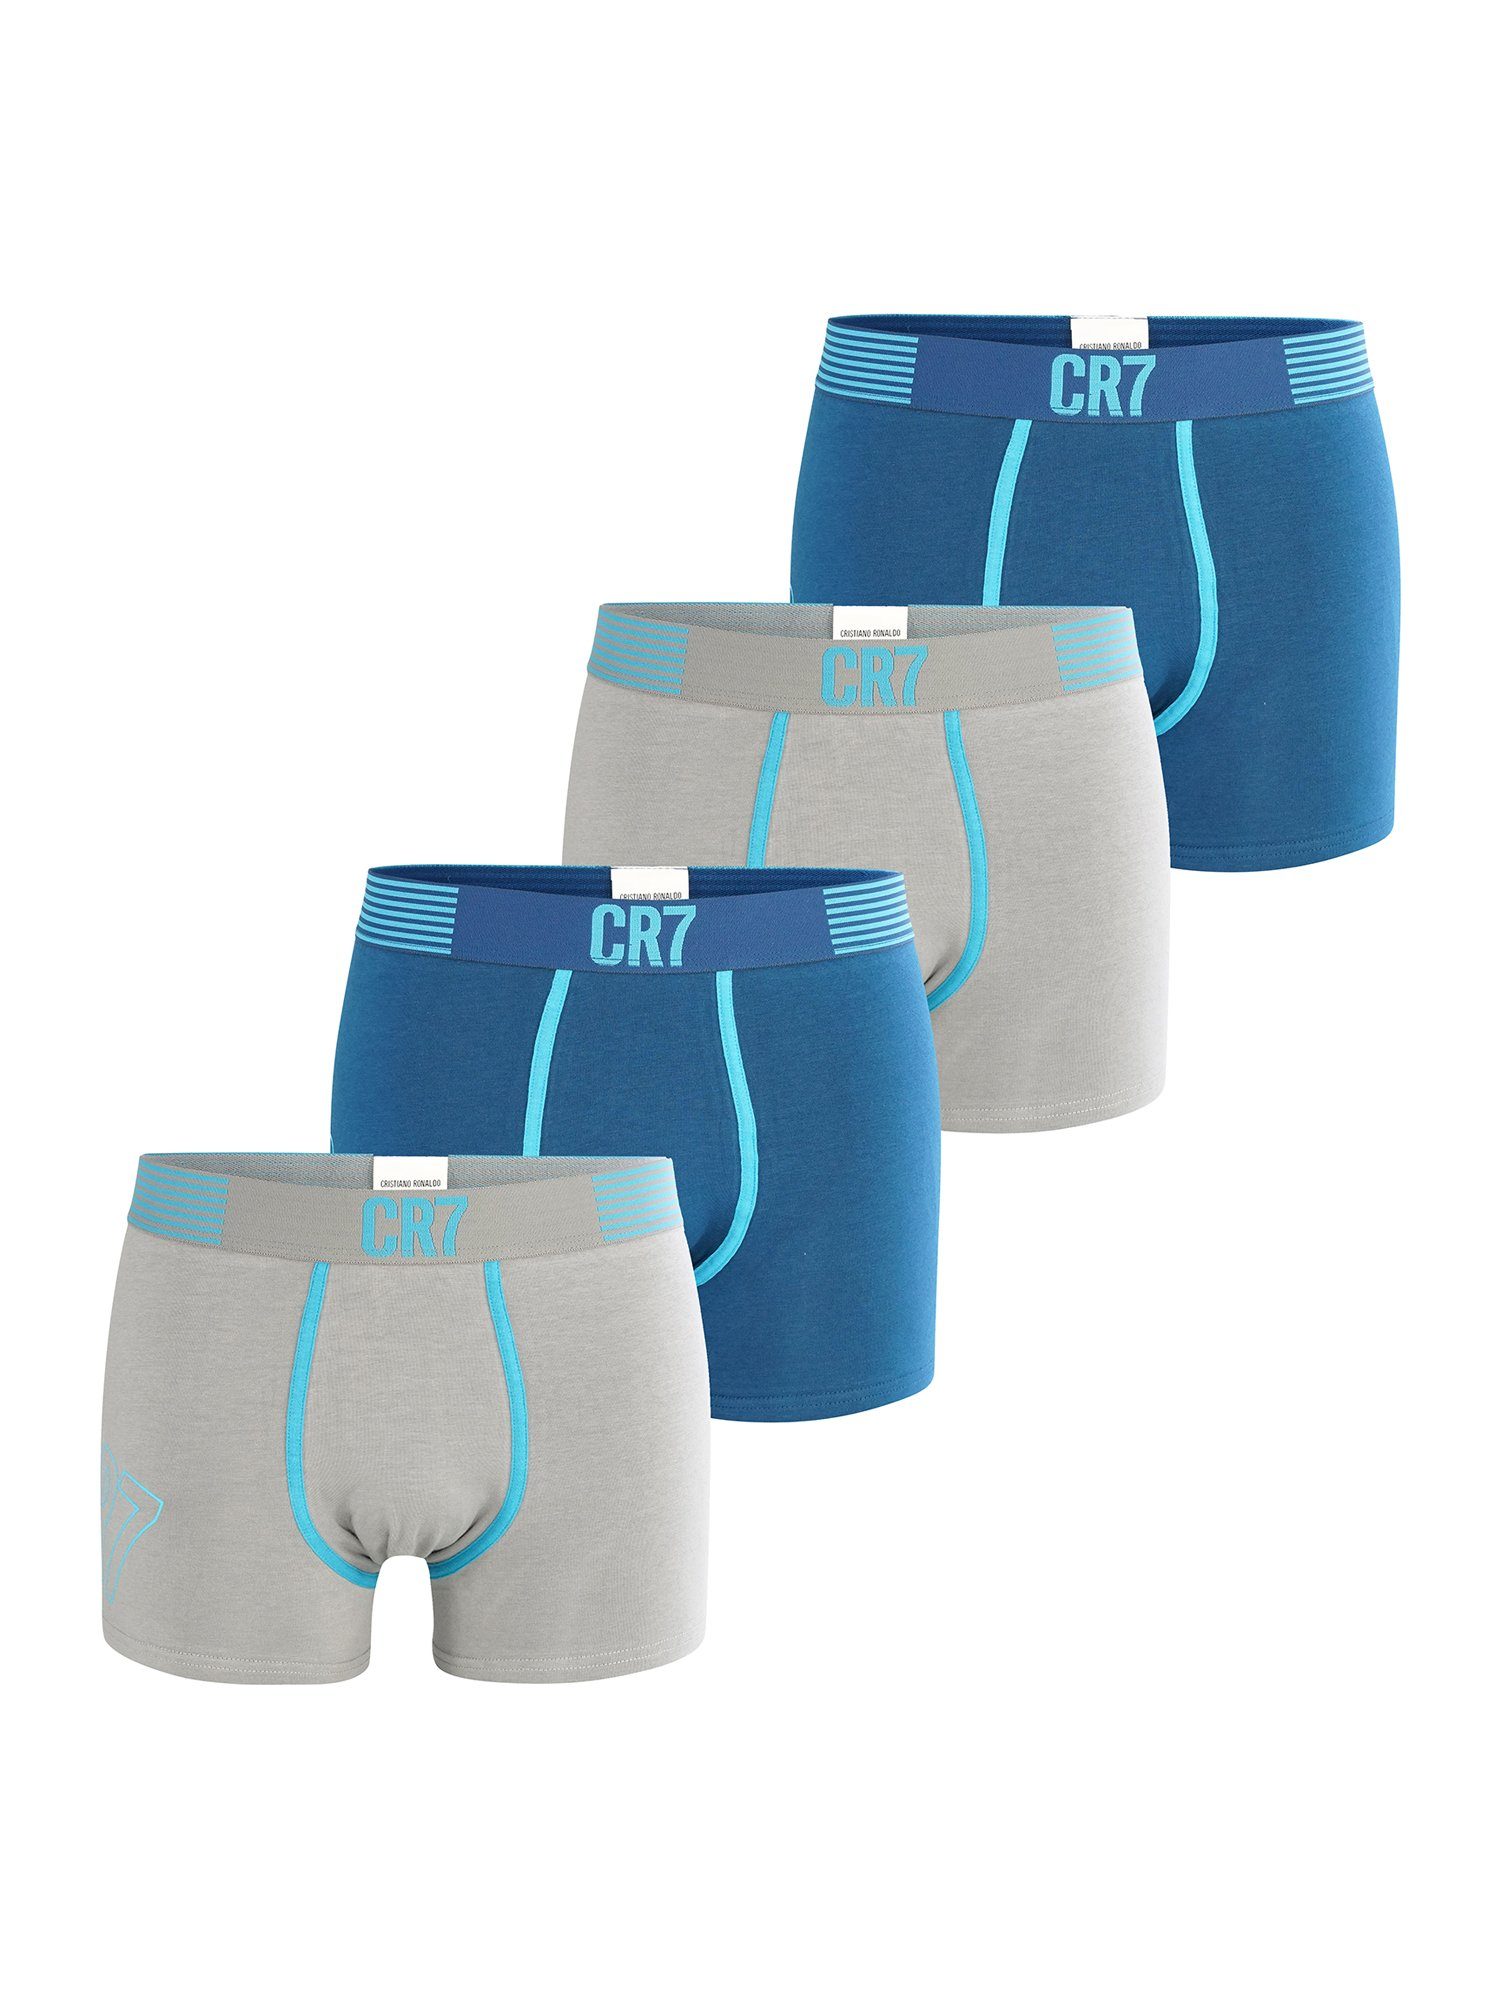 CR7 Retro Pants FASHION 4-Pack grau/blau